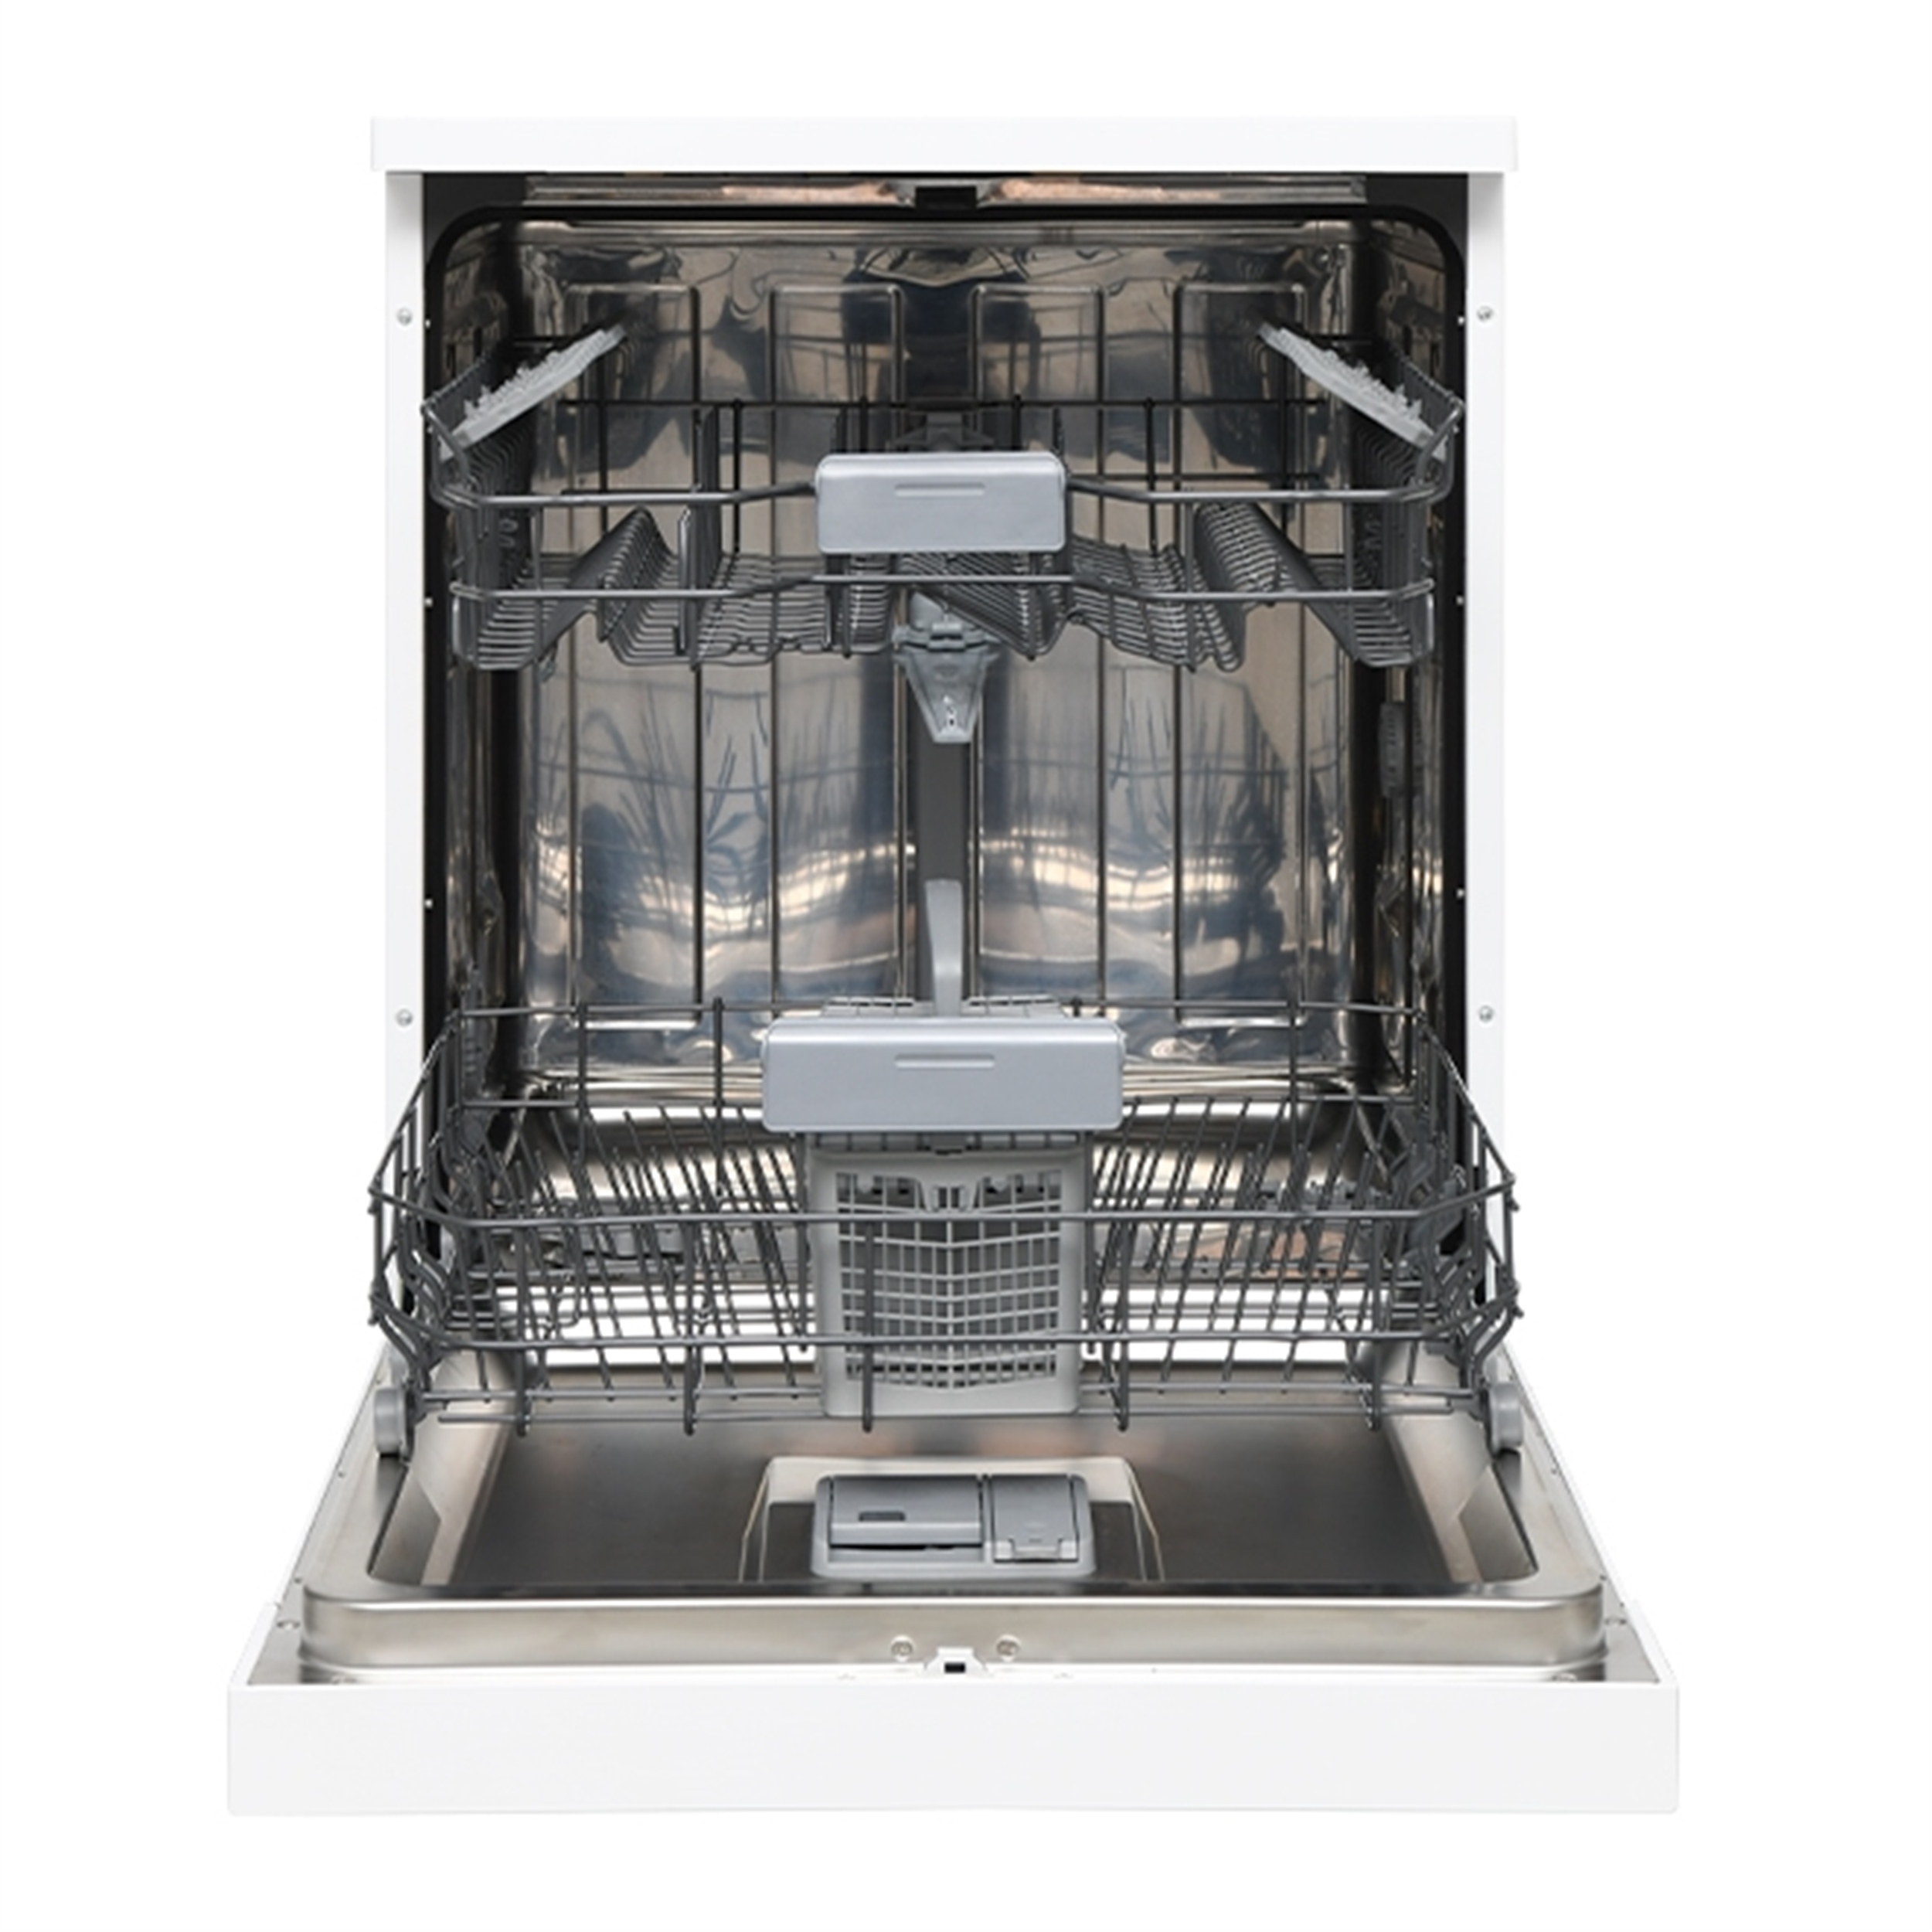 REGAL BM 313 YENİ 3 Programlı, Beyaz, E Enerji sınıfı, Metal filtre Bulaşık  Makinesi (REGAL.20265510) | Afeks Yapı Market